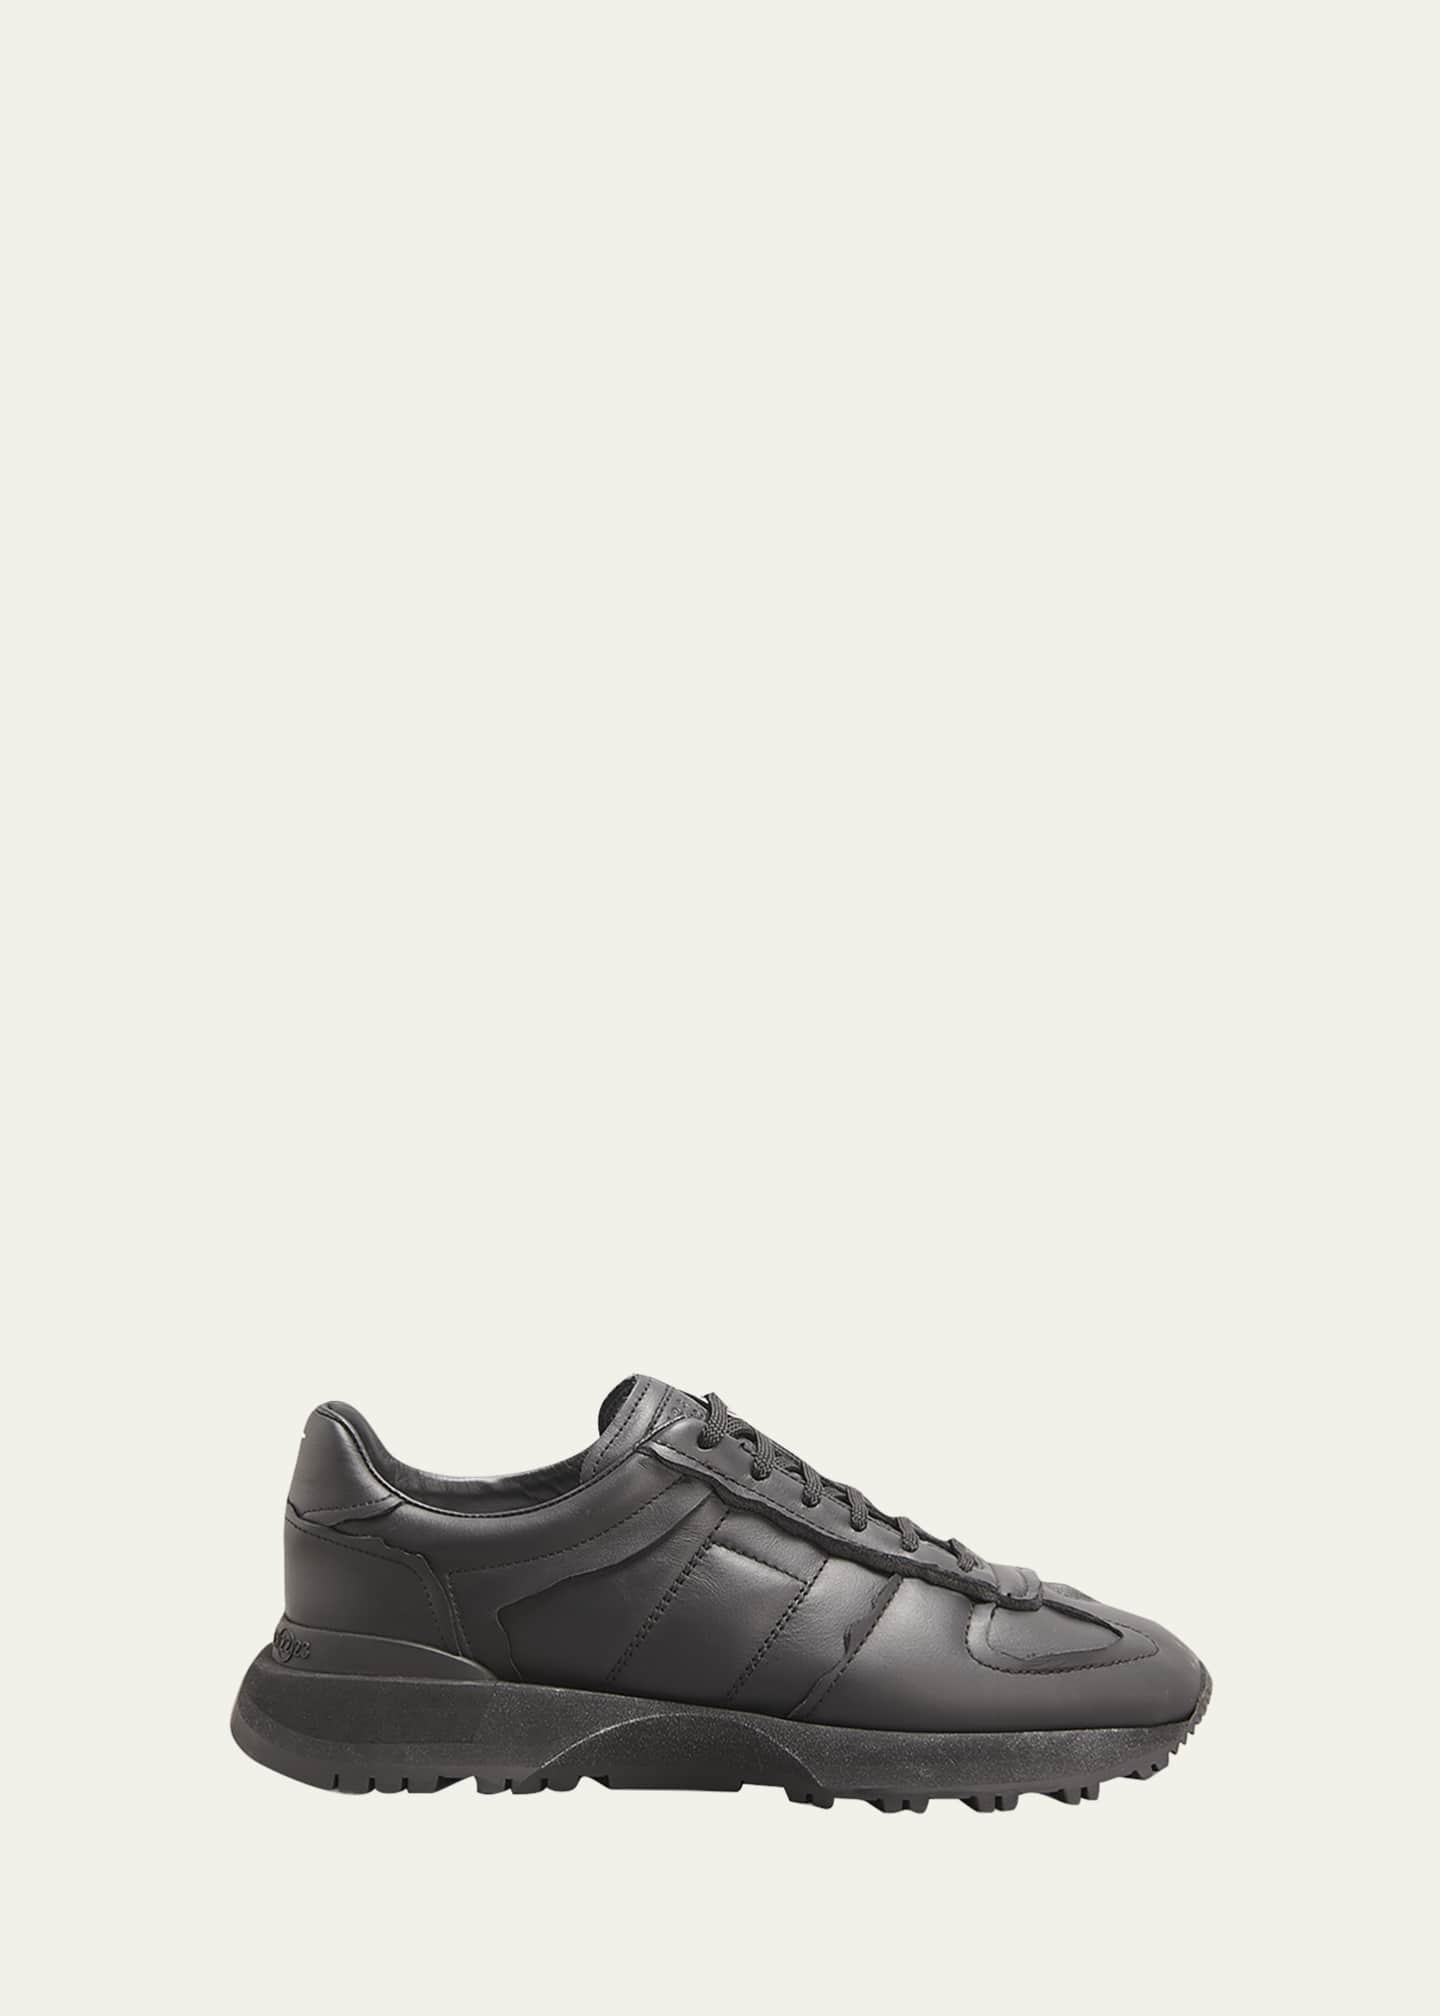 Maison Margiela Men's 50-50 Tonal Leather Sneakers - Bergdorf Goodman